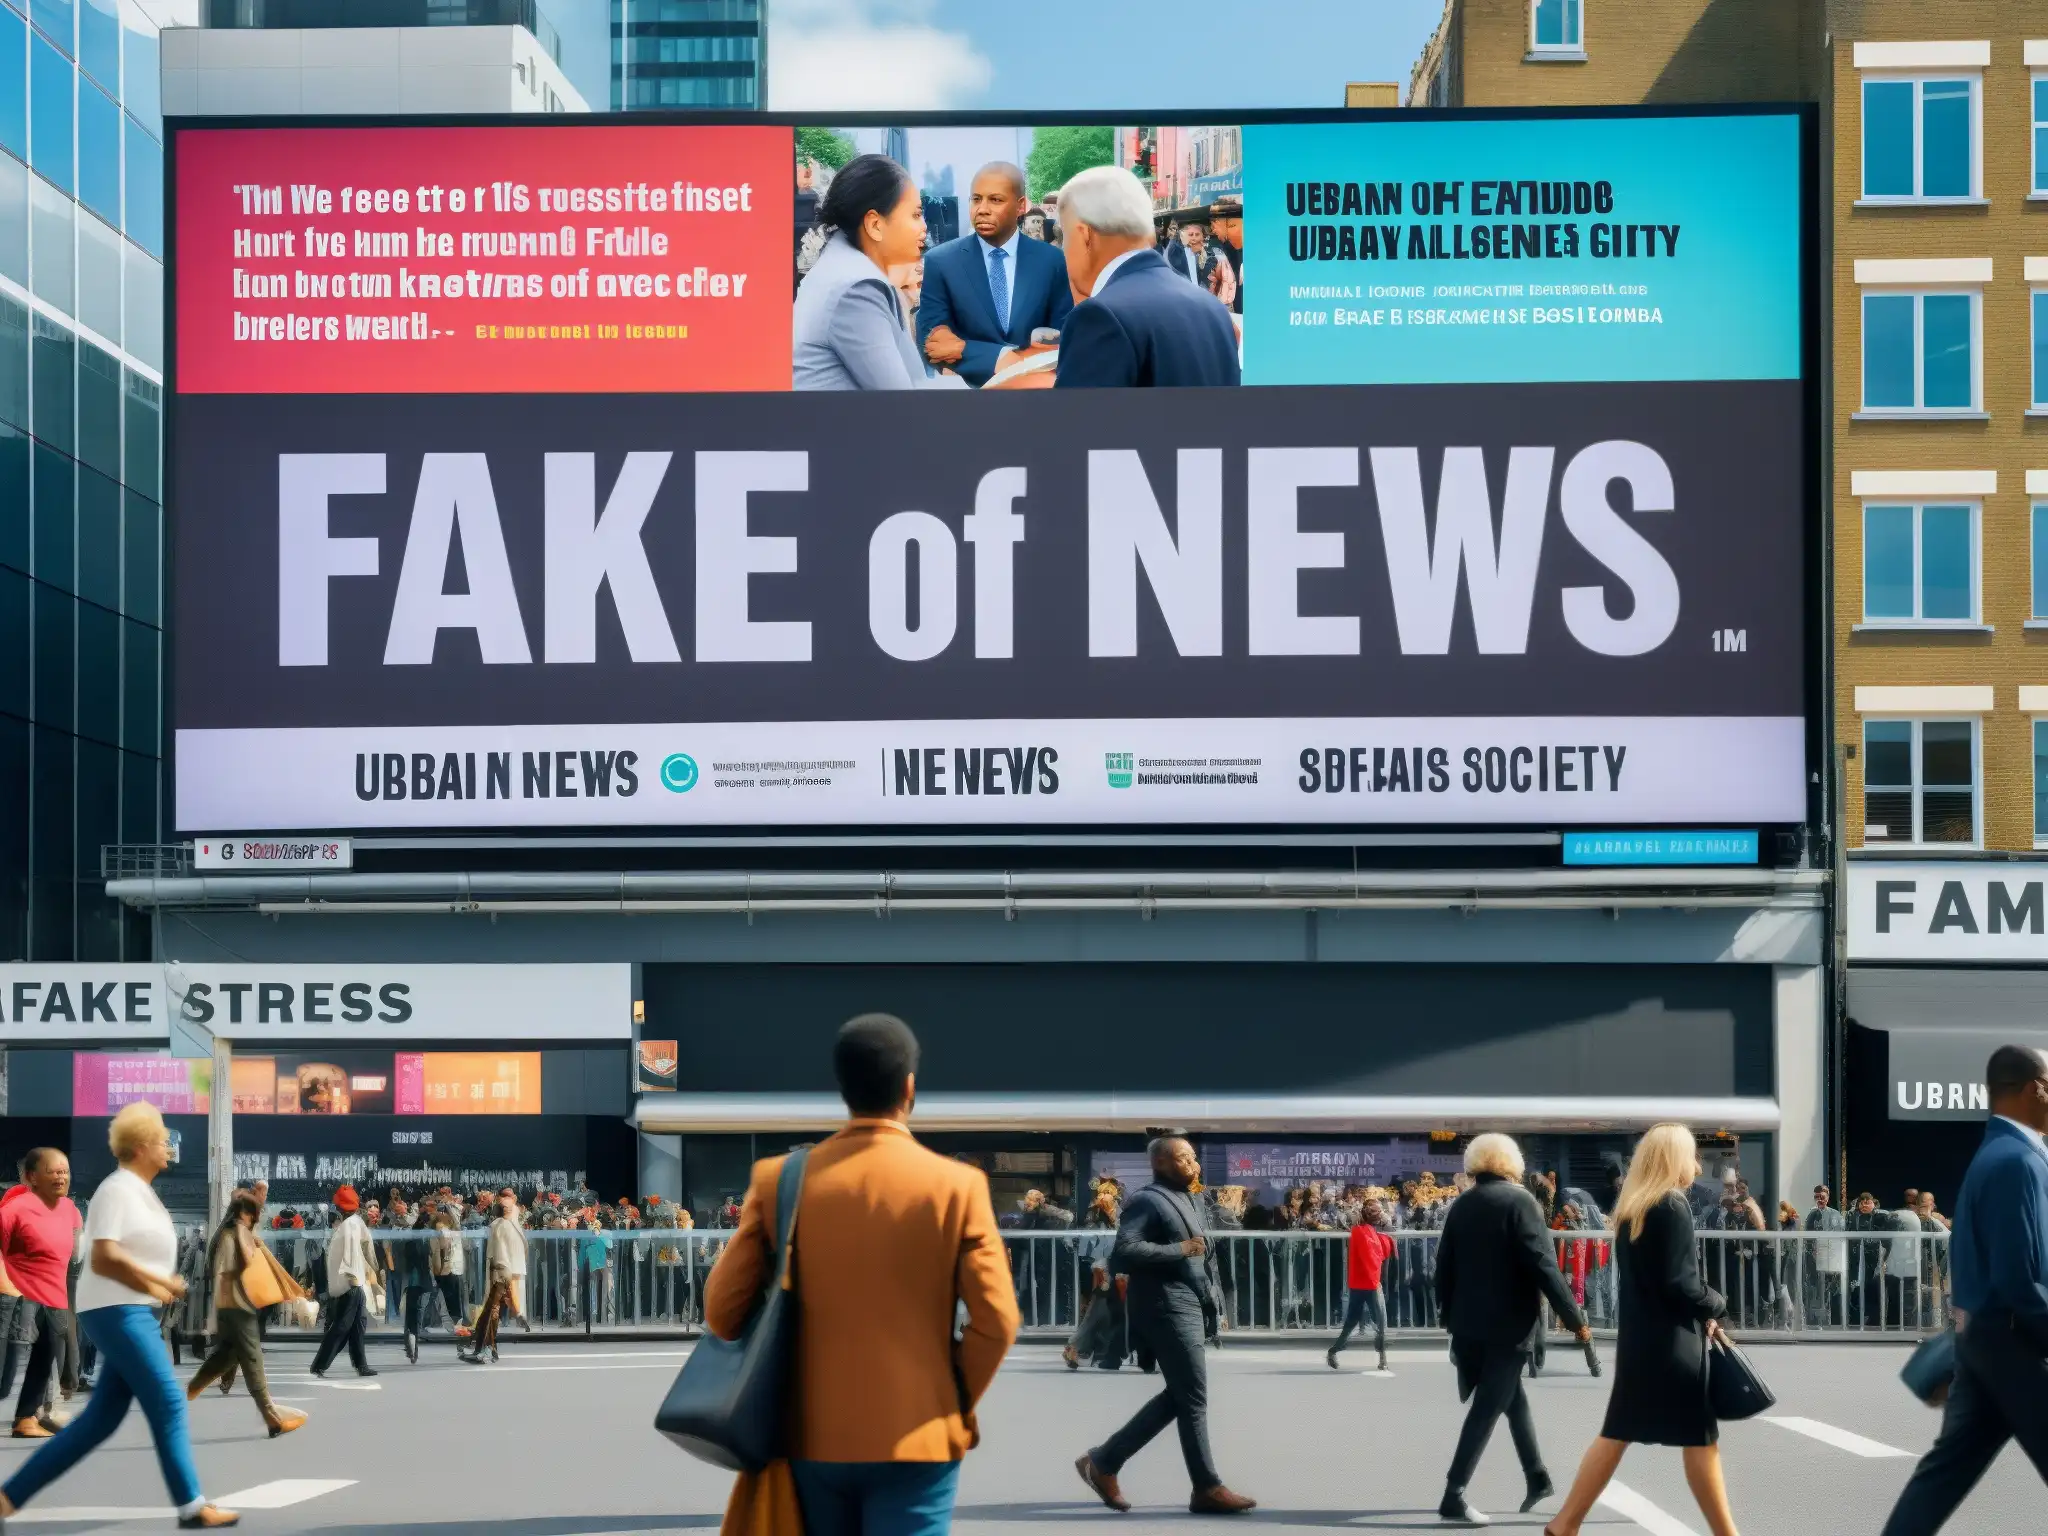 Animada calle urbana contrasta con impacto de Fake News y leyendas urbanas en sociedad